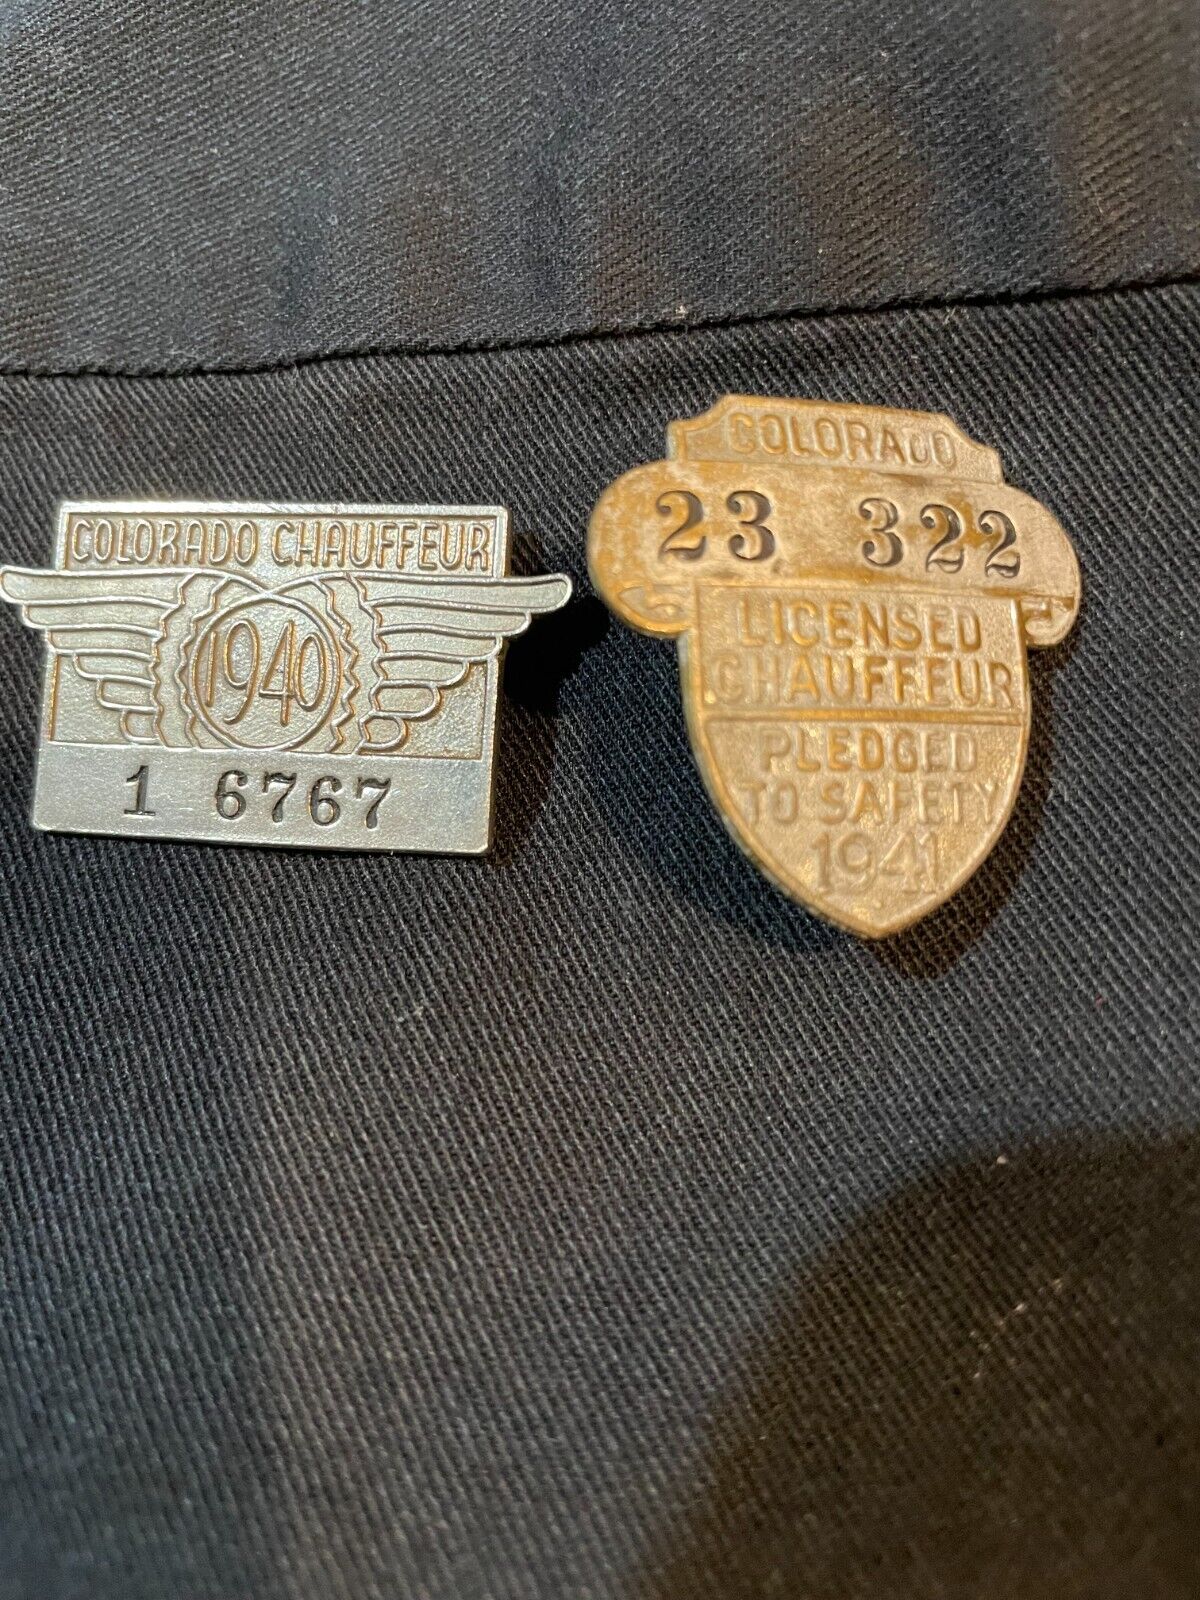 2 VINTAGE COLORADO CHAUFFEUR BADGE PINS 1940-41 NICE